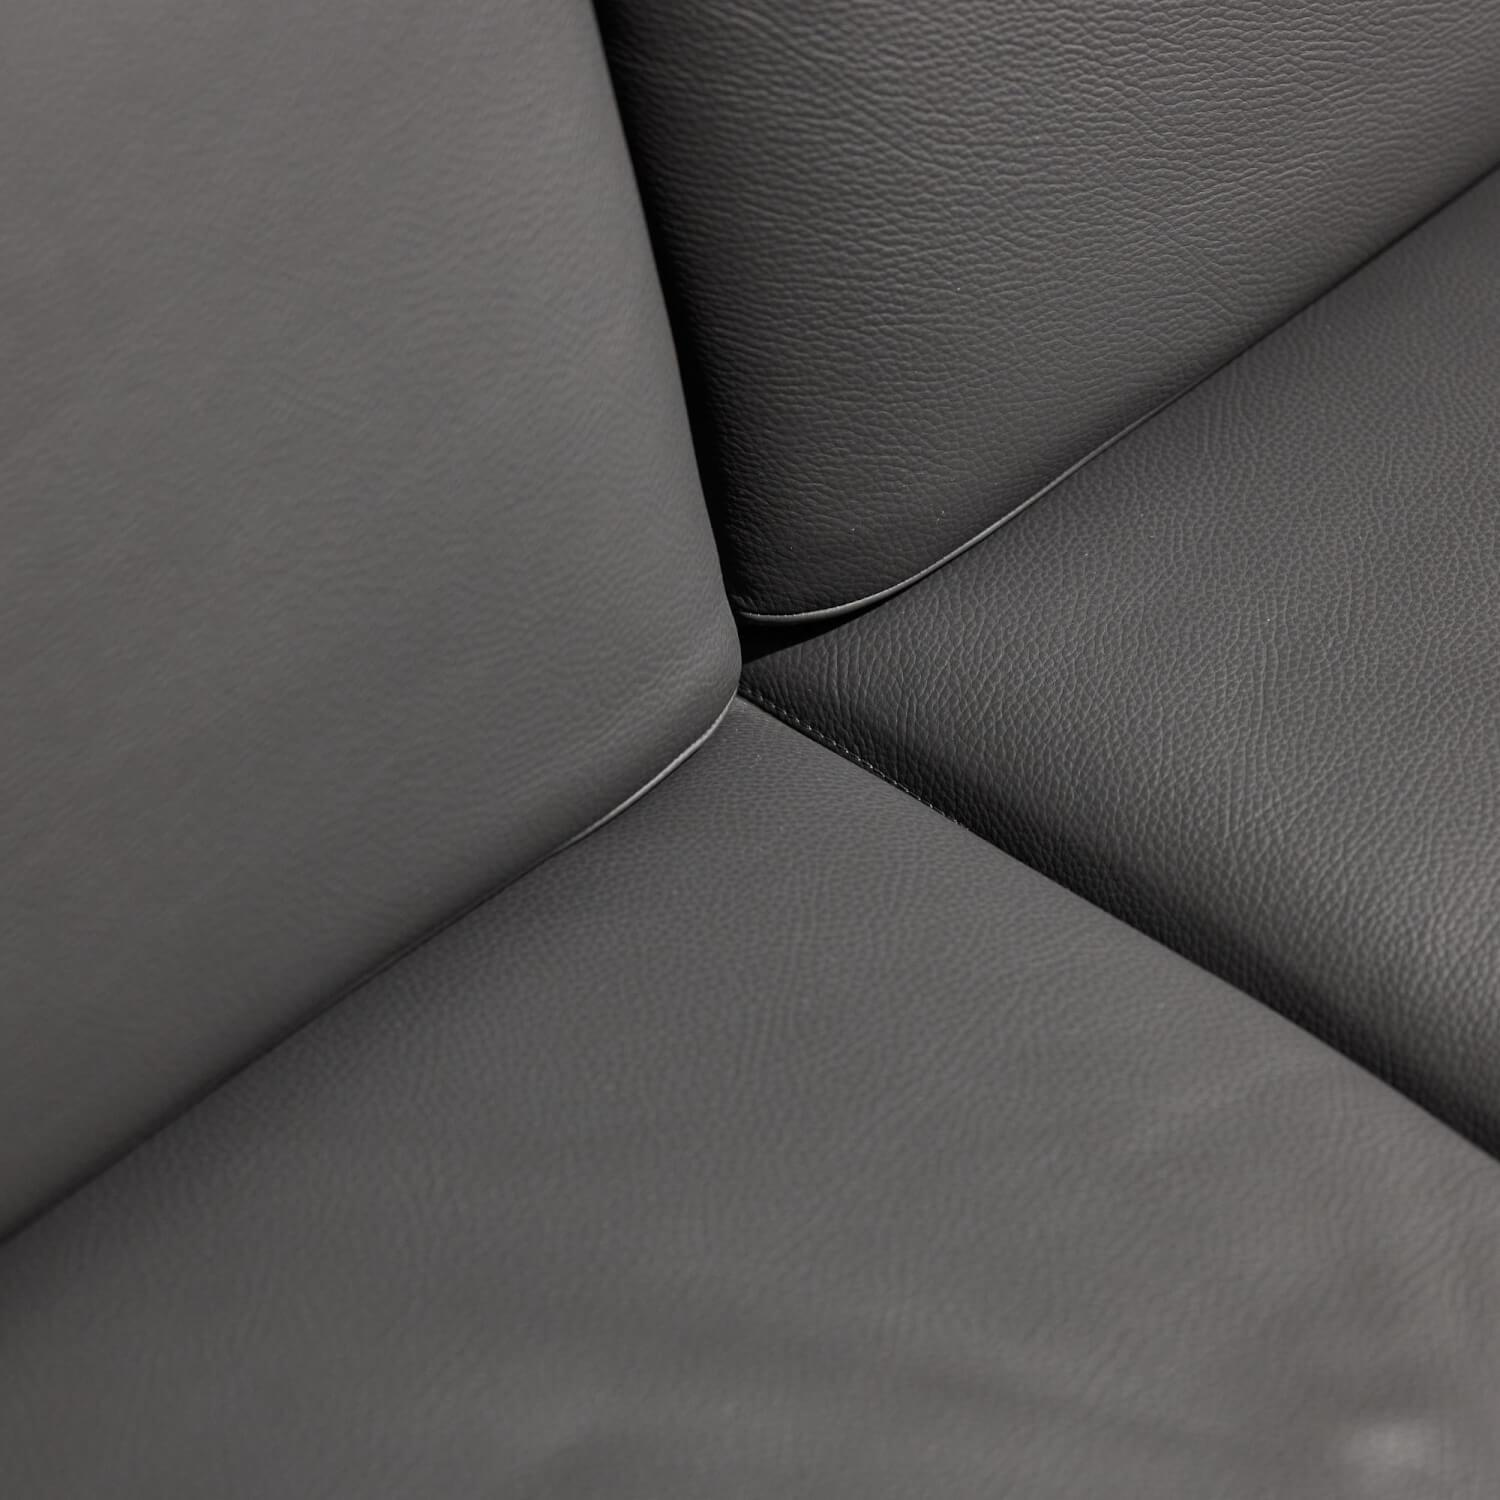 Sofa Avantgarde Leder 170.059 Farbe Anthrazit Motorisch Verstellbar Gestell Kufe Verchromt